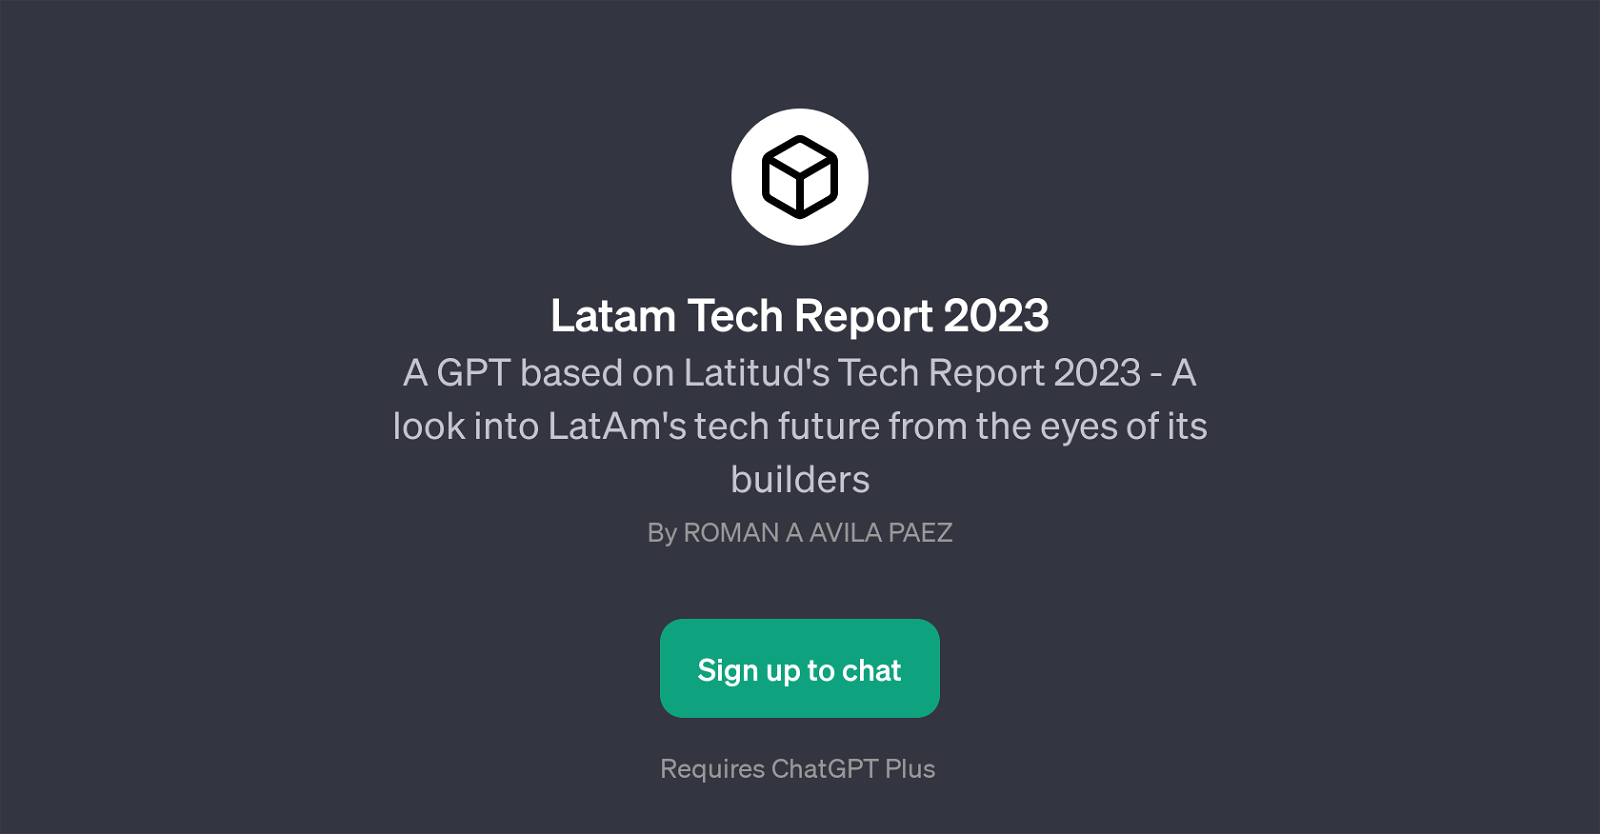 Latam Tech Report 2023 website